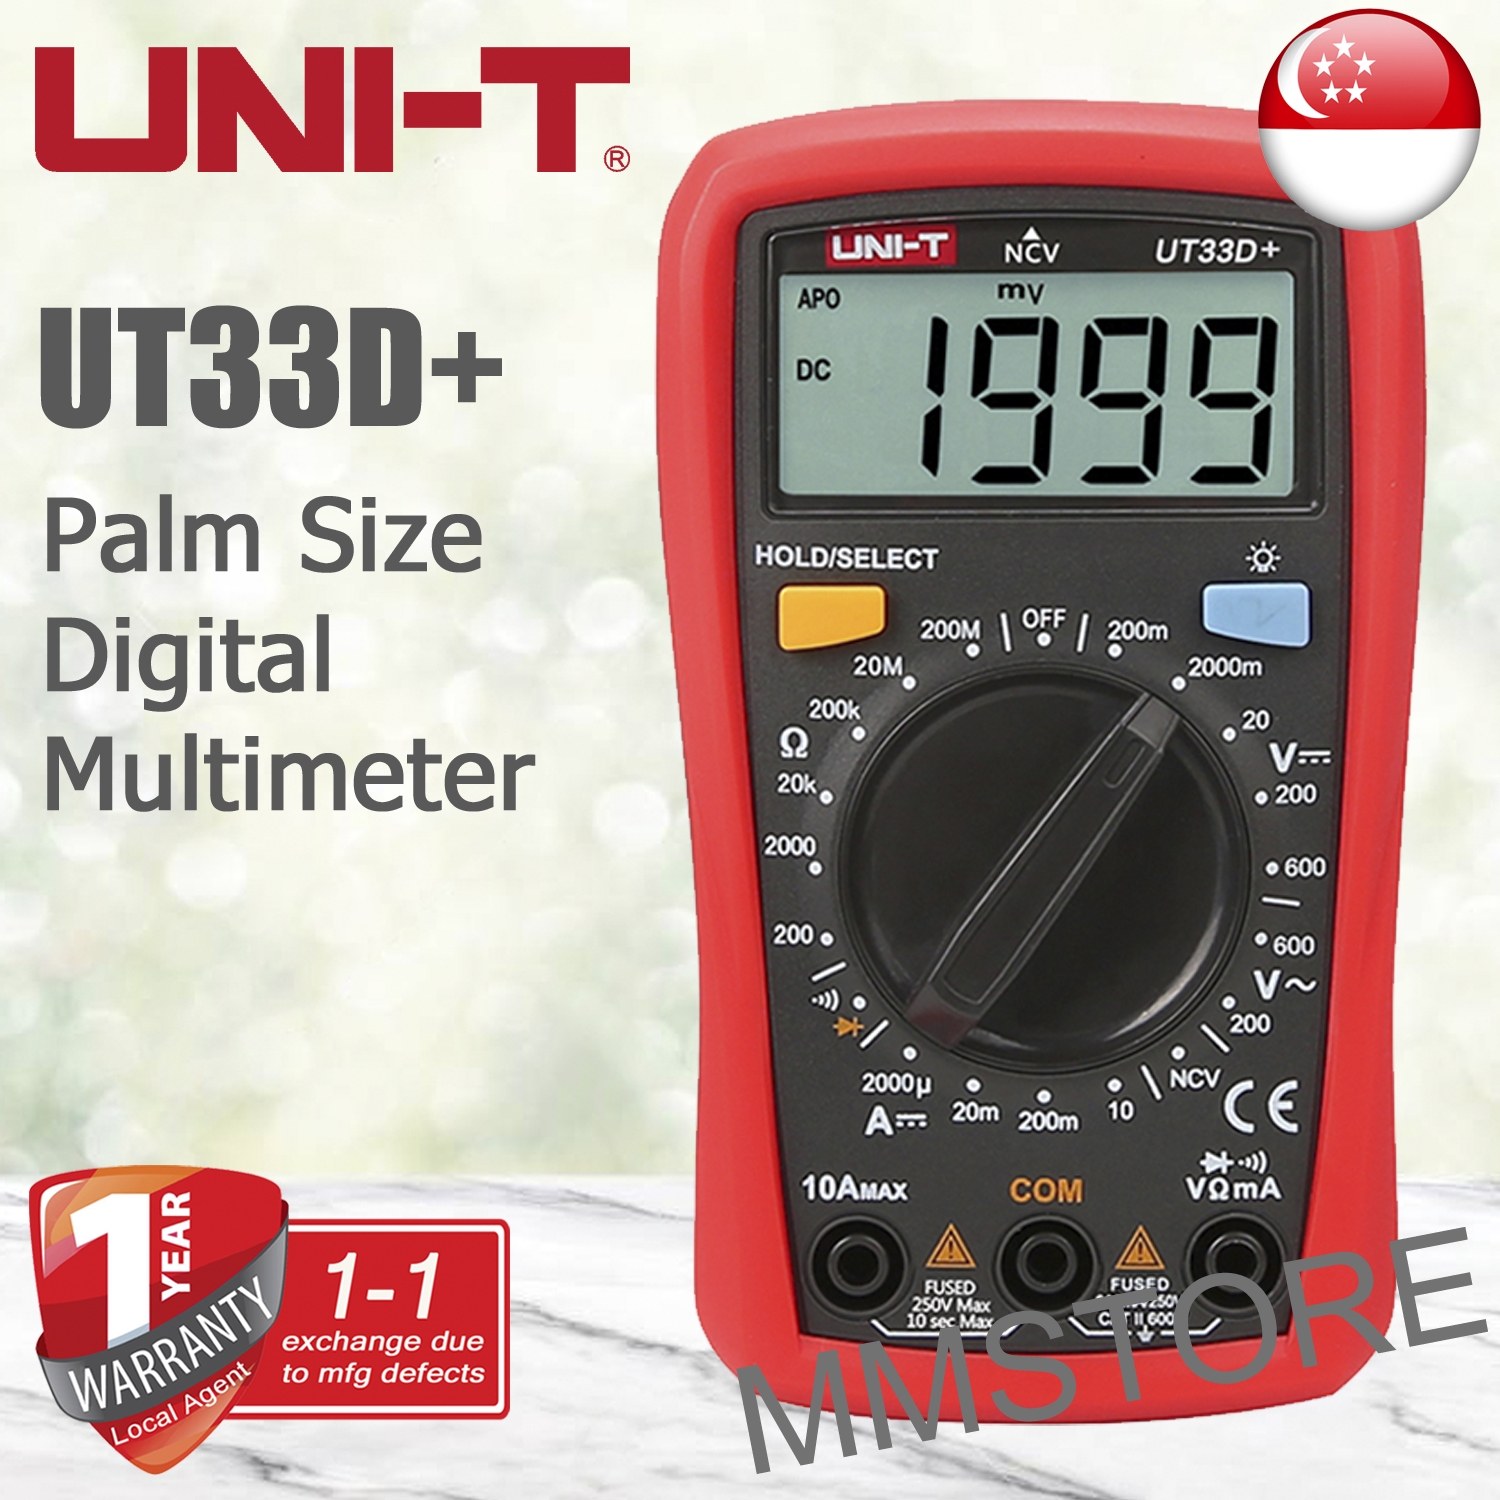 Digital Multimeter UT33D